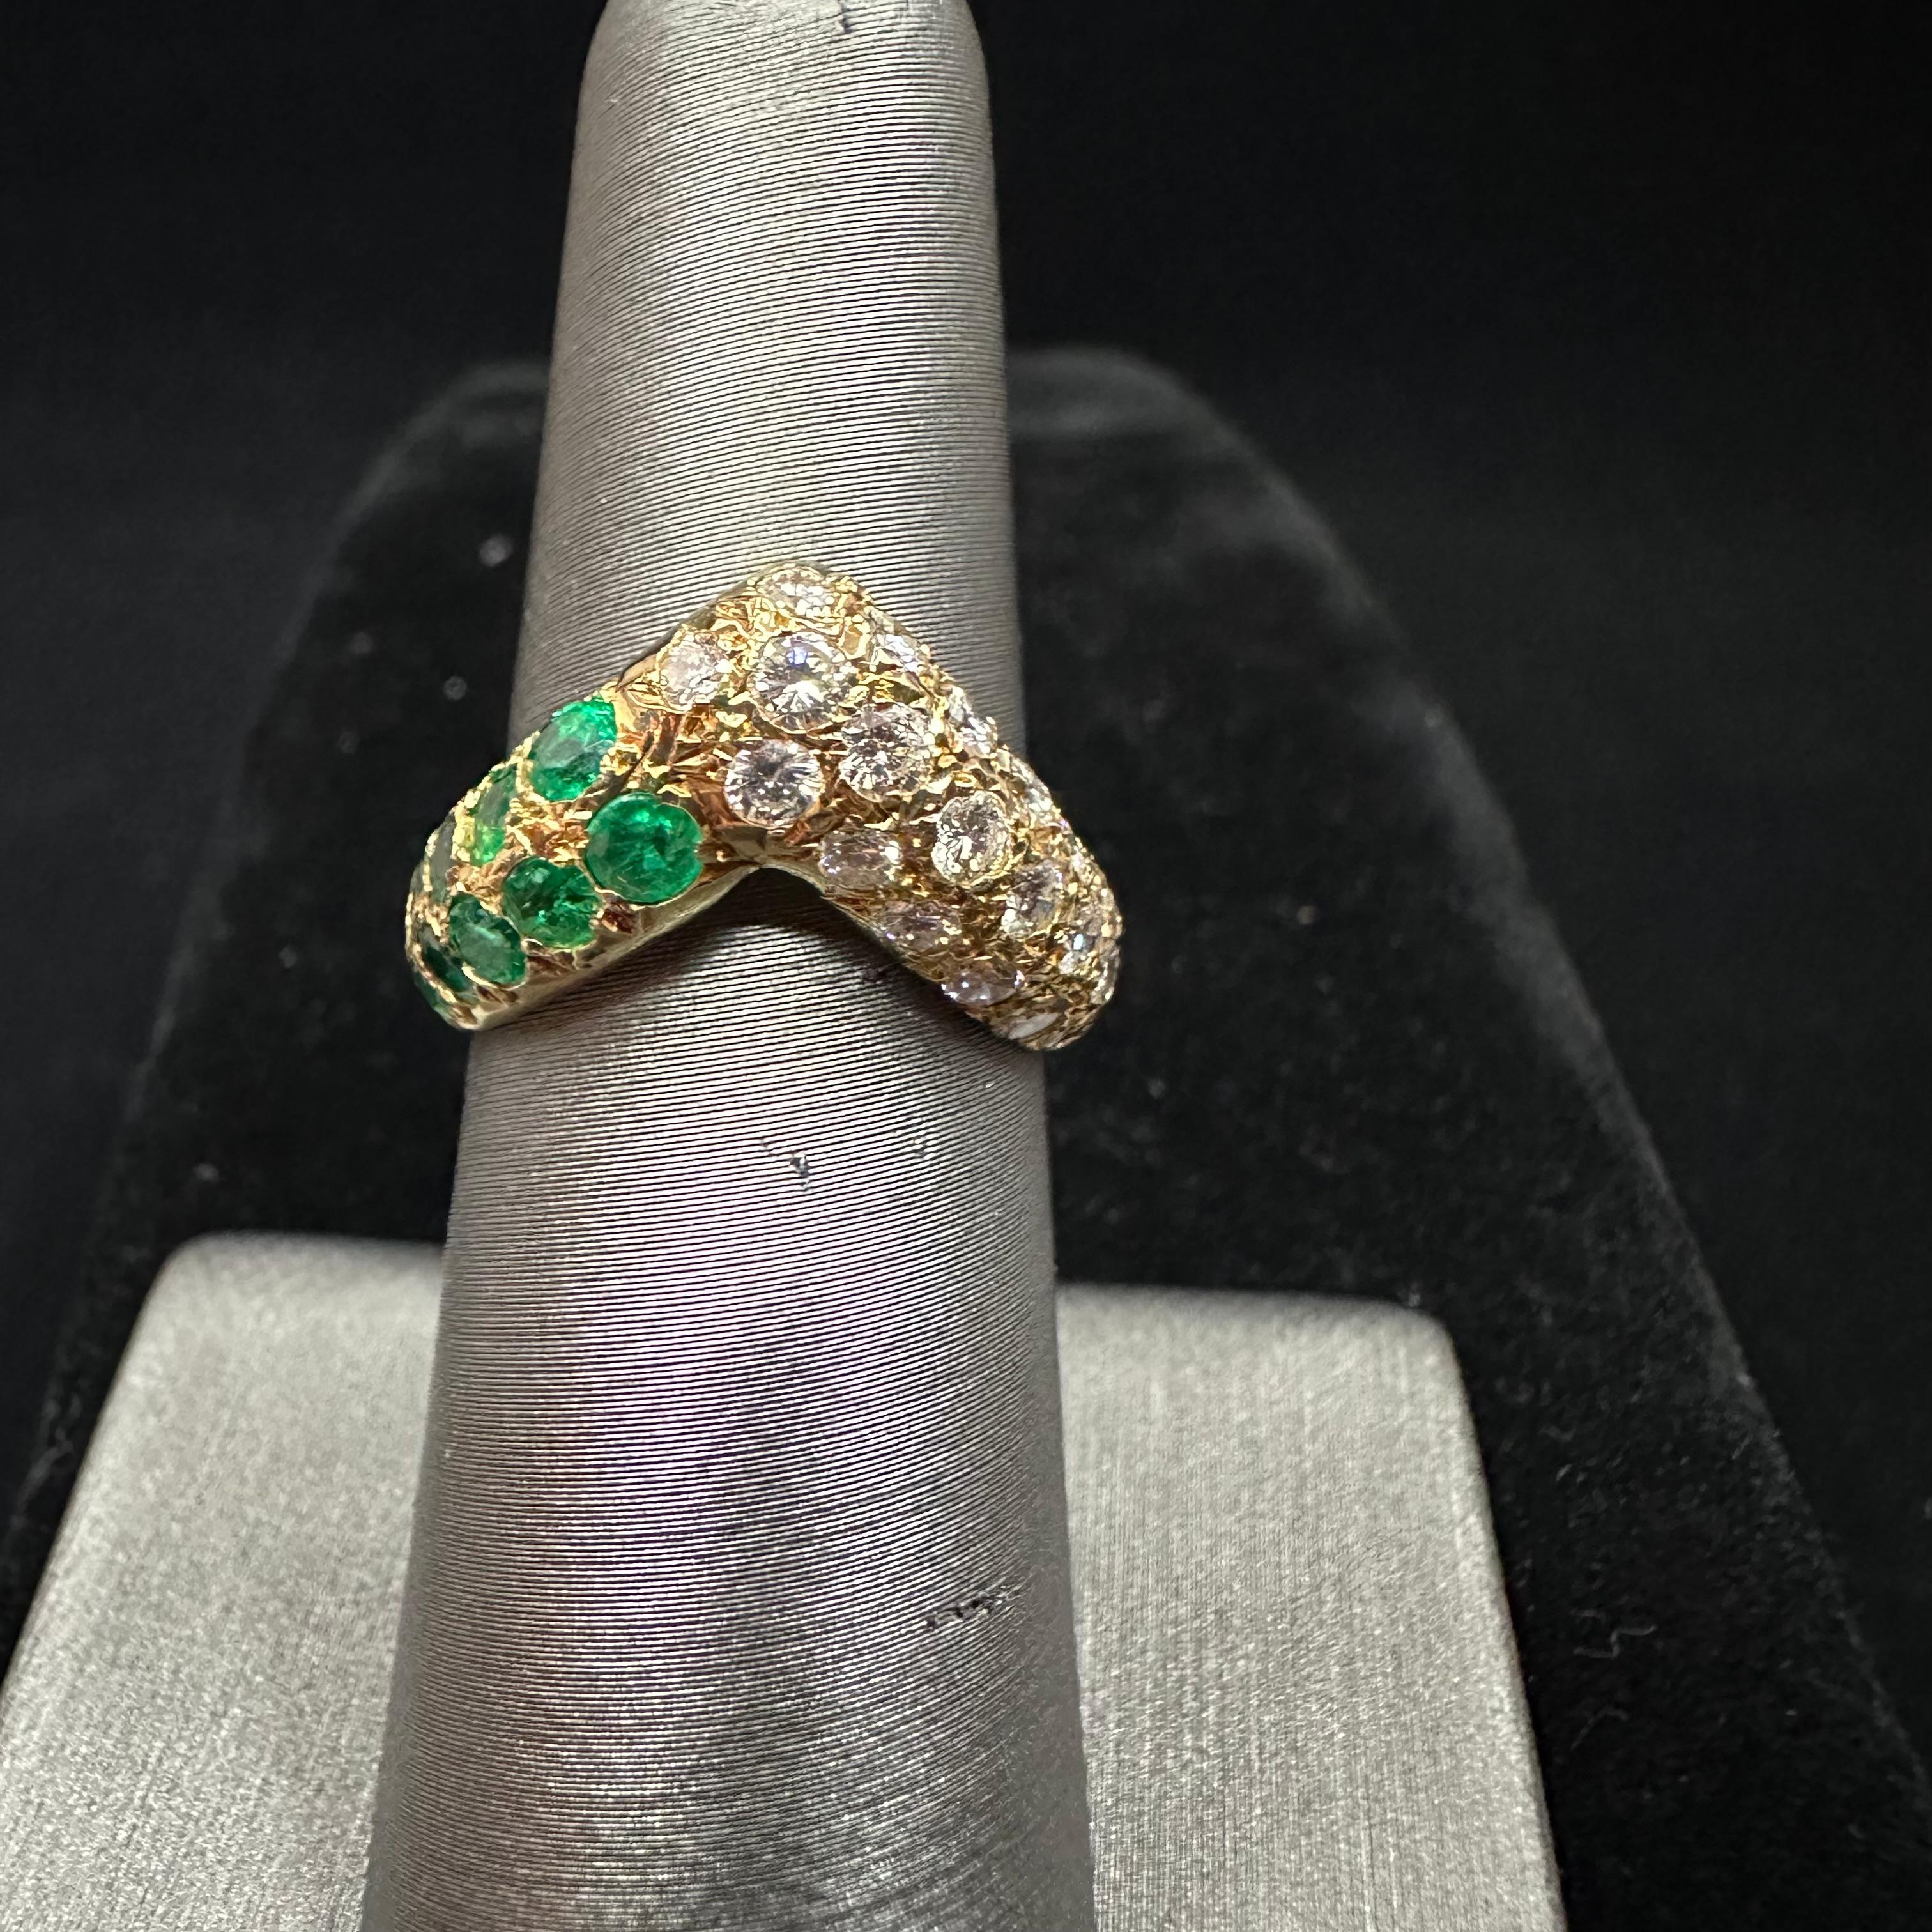 VCA Smaragd & Diamant Asymmetrischer Stapelring.
Pave Set runde Brillanten und Smaragde
TW  1,55 Karat
18k Gelbgold 
Größe 5.5
Produziert in verschiedenen Variationen von Stapelringen ab den 1970er Jahren 
Made in France Punzierungen und